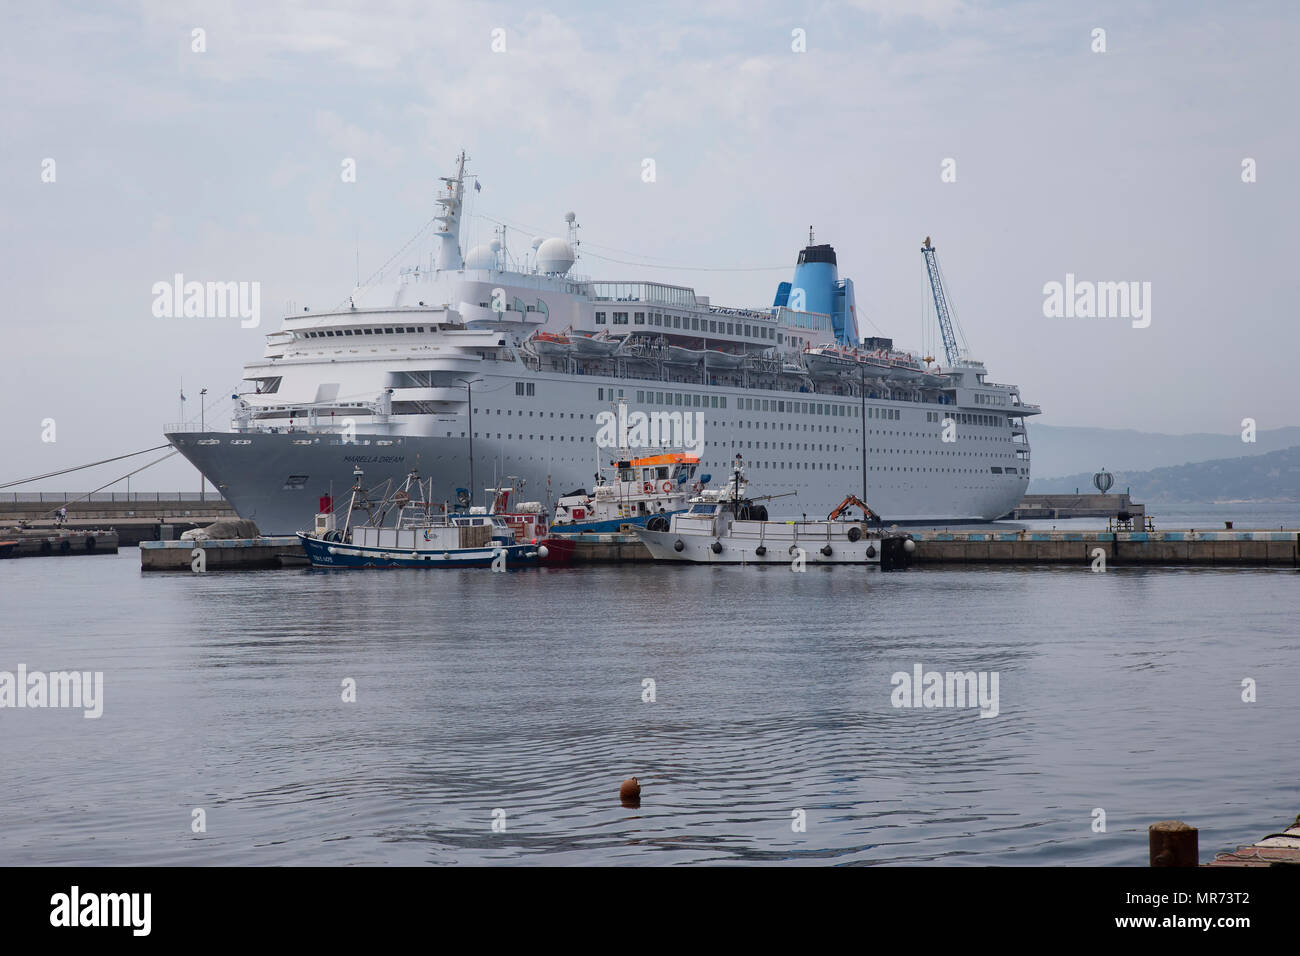 Le paquebot de croisière TUI arella "Dream' amarré dans un port Méditerranéen Banque D'Images